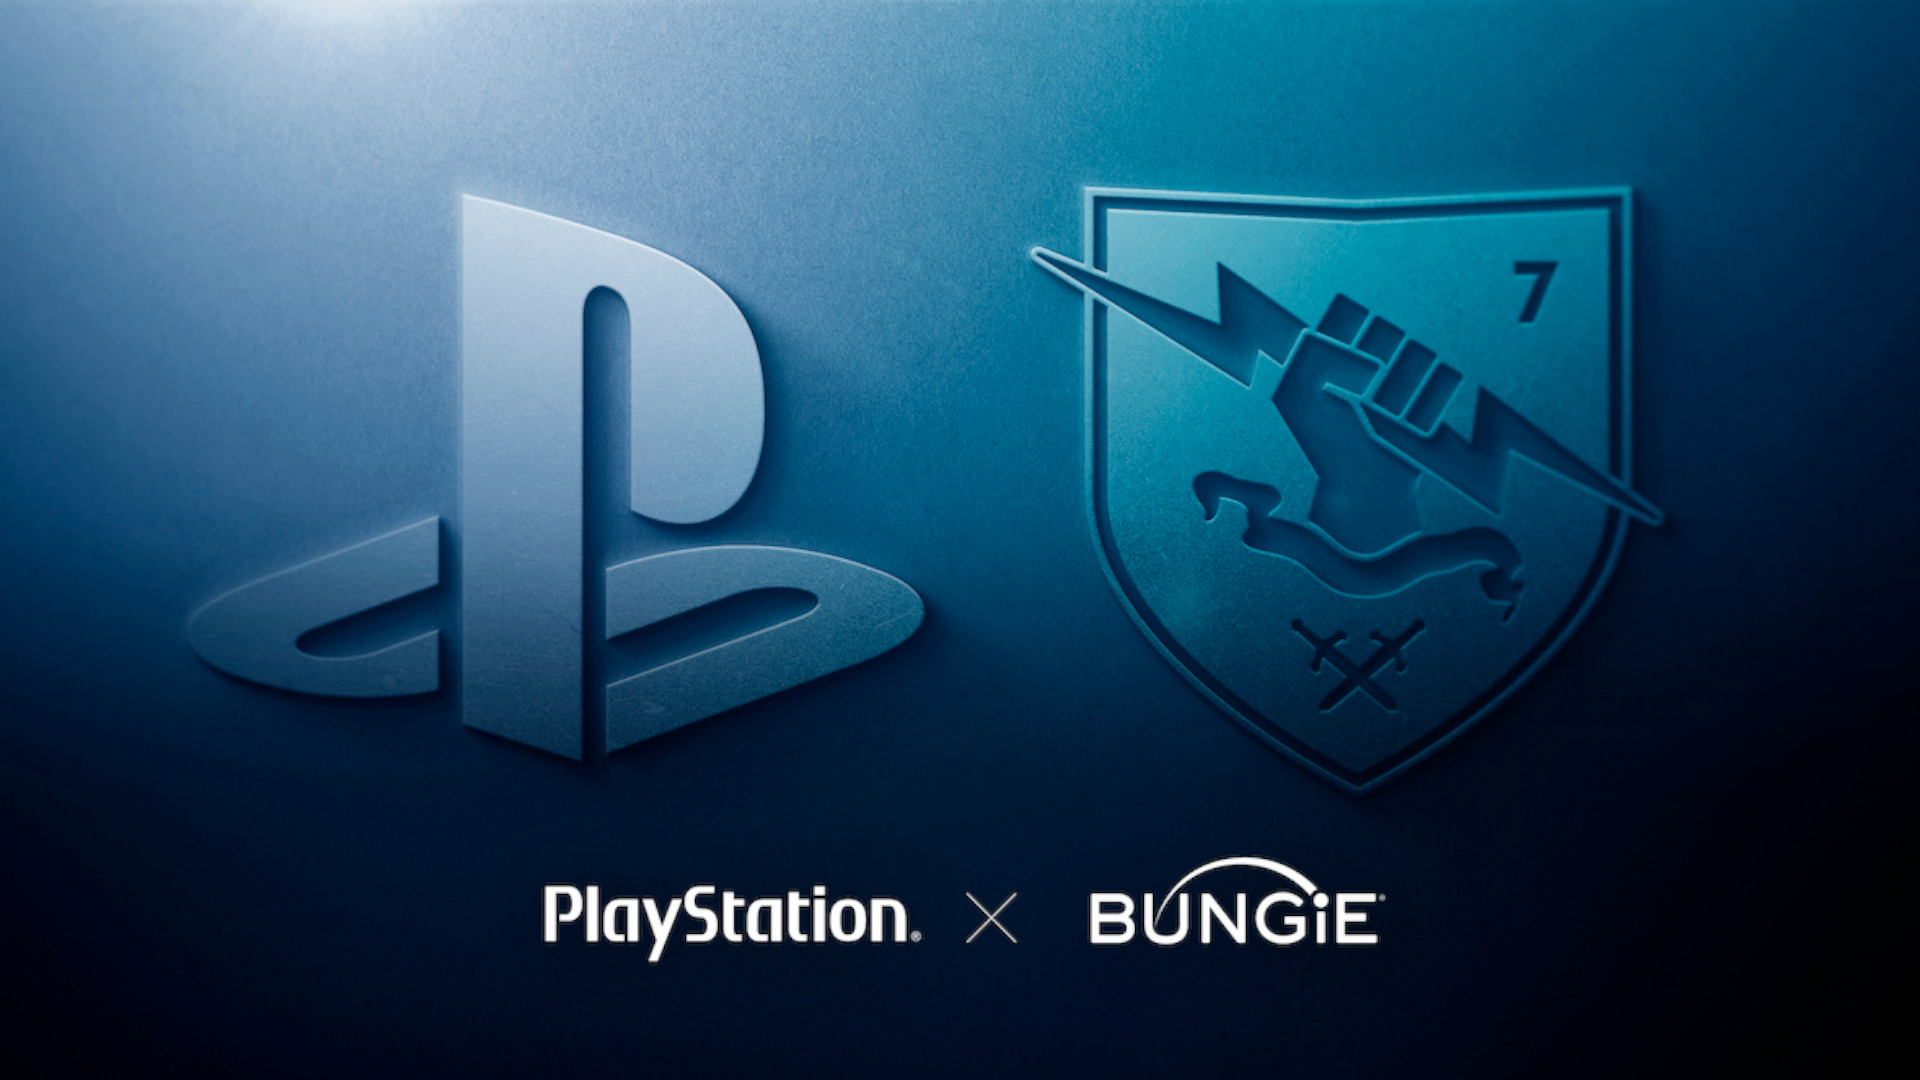 Sony now owns Destiny 2 developer Bungie